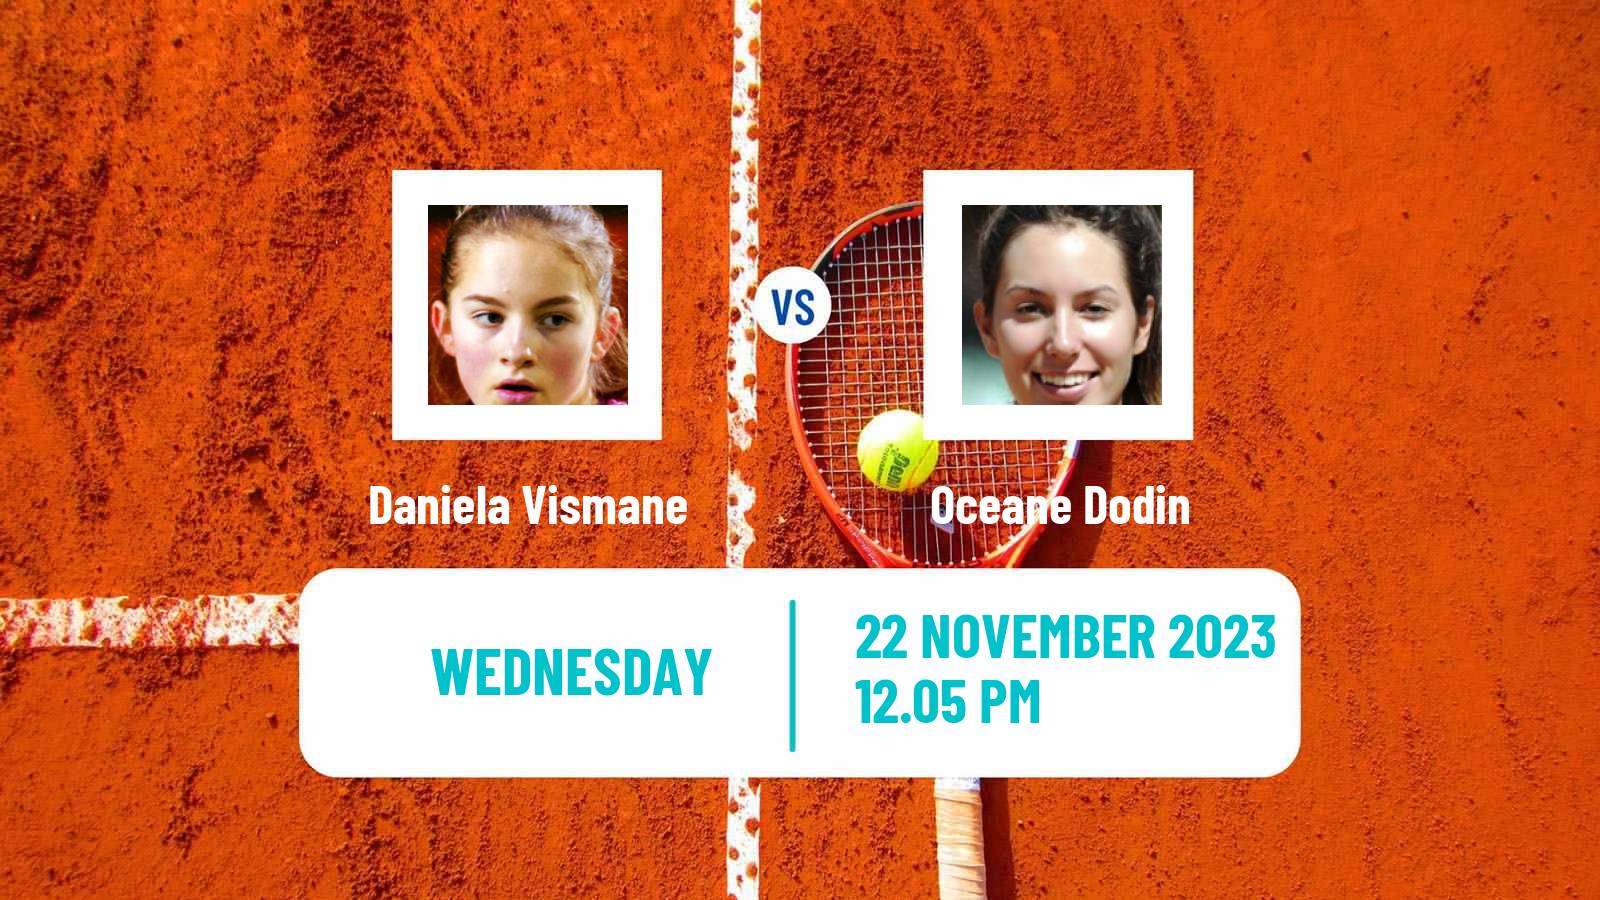 Tennis ITF W100 Valencia Women Daniela Vismane - Oceane Dodin